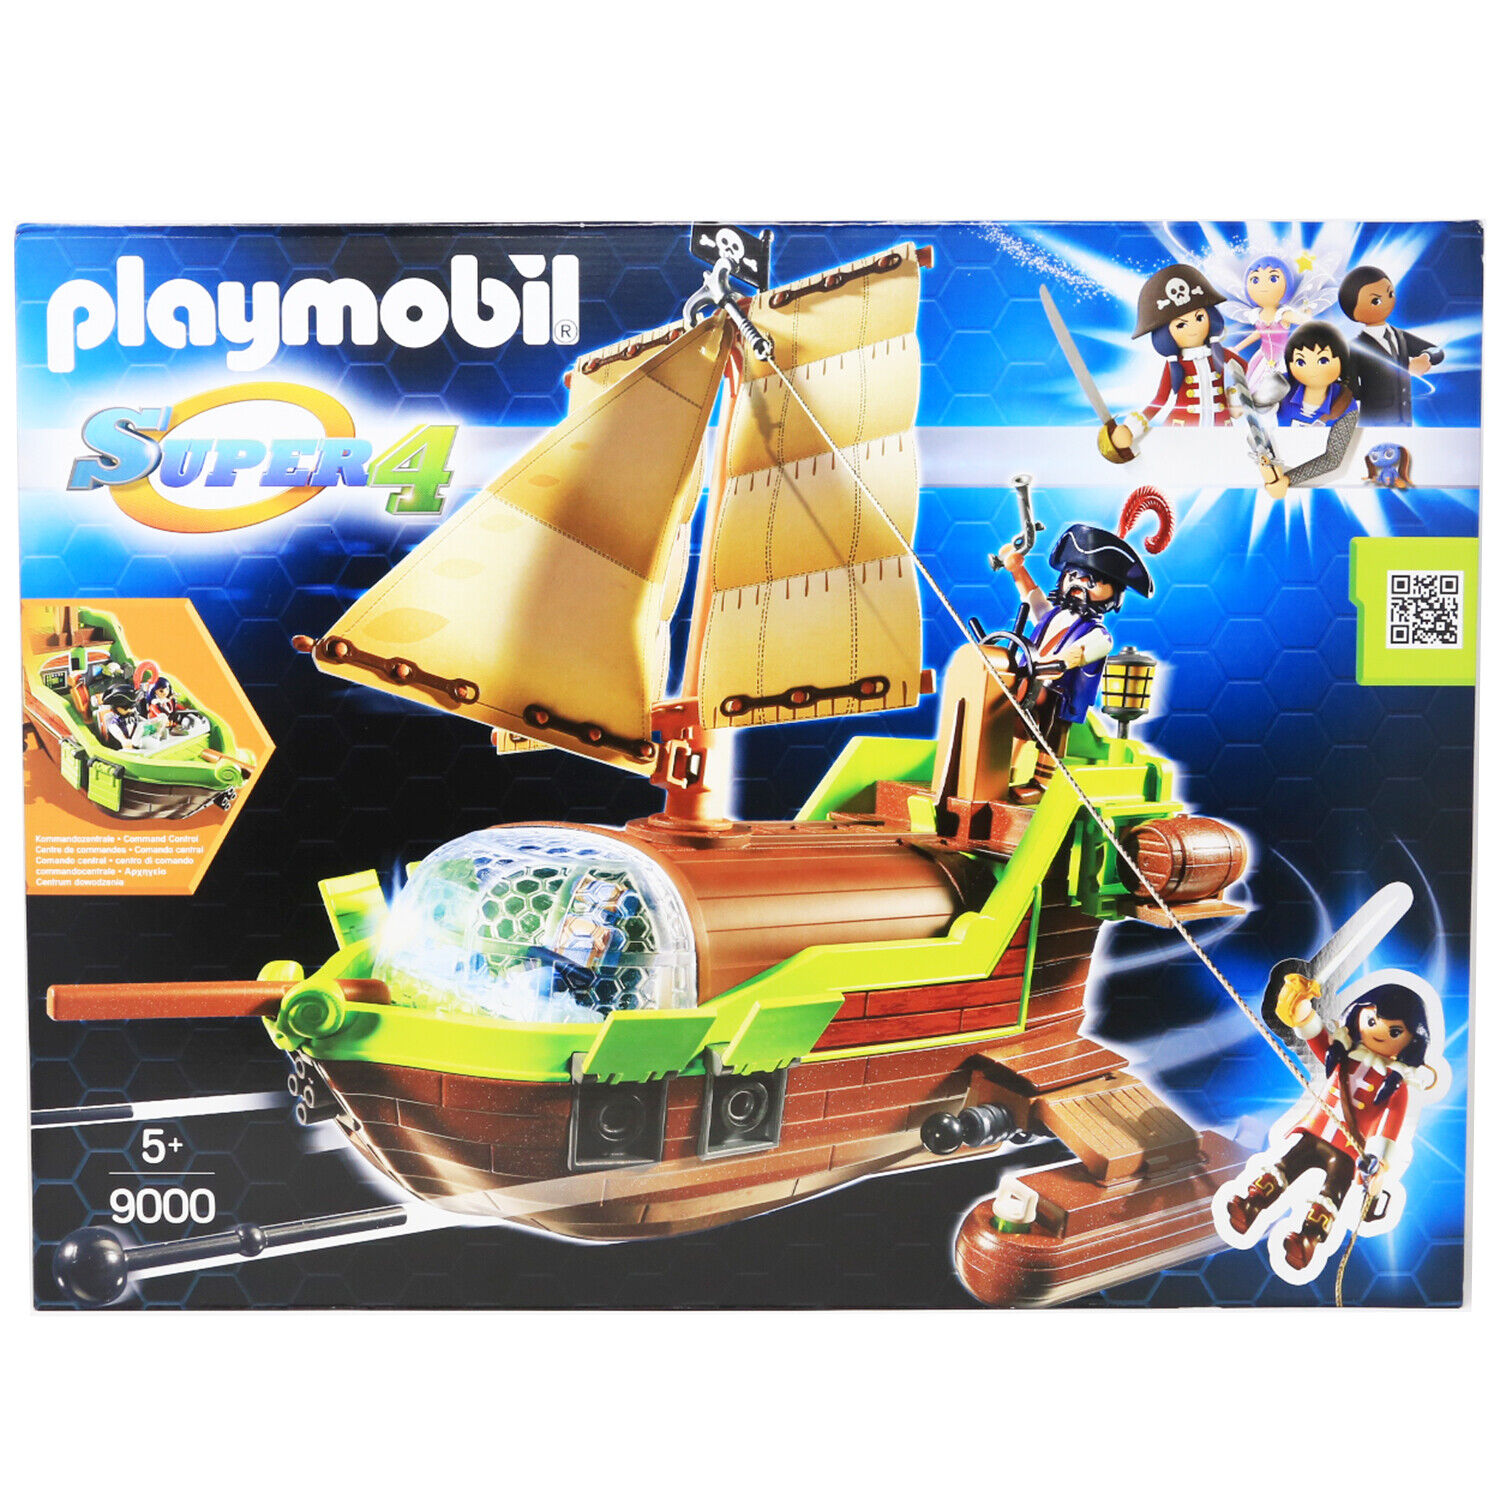 bruge vinder Kom forbi for at vide det Playmobil 9000 Super 4 Floating Pirate Chameleon with Ruby, Brand New!! |  eBay